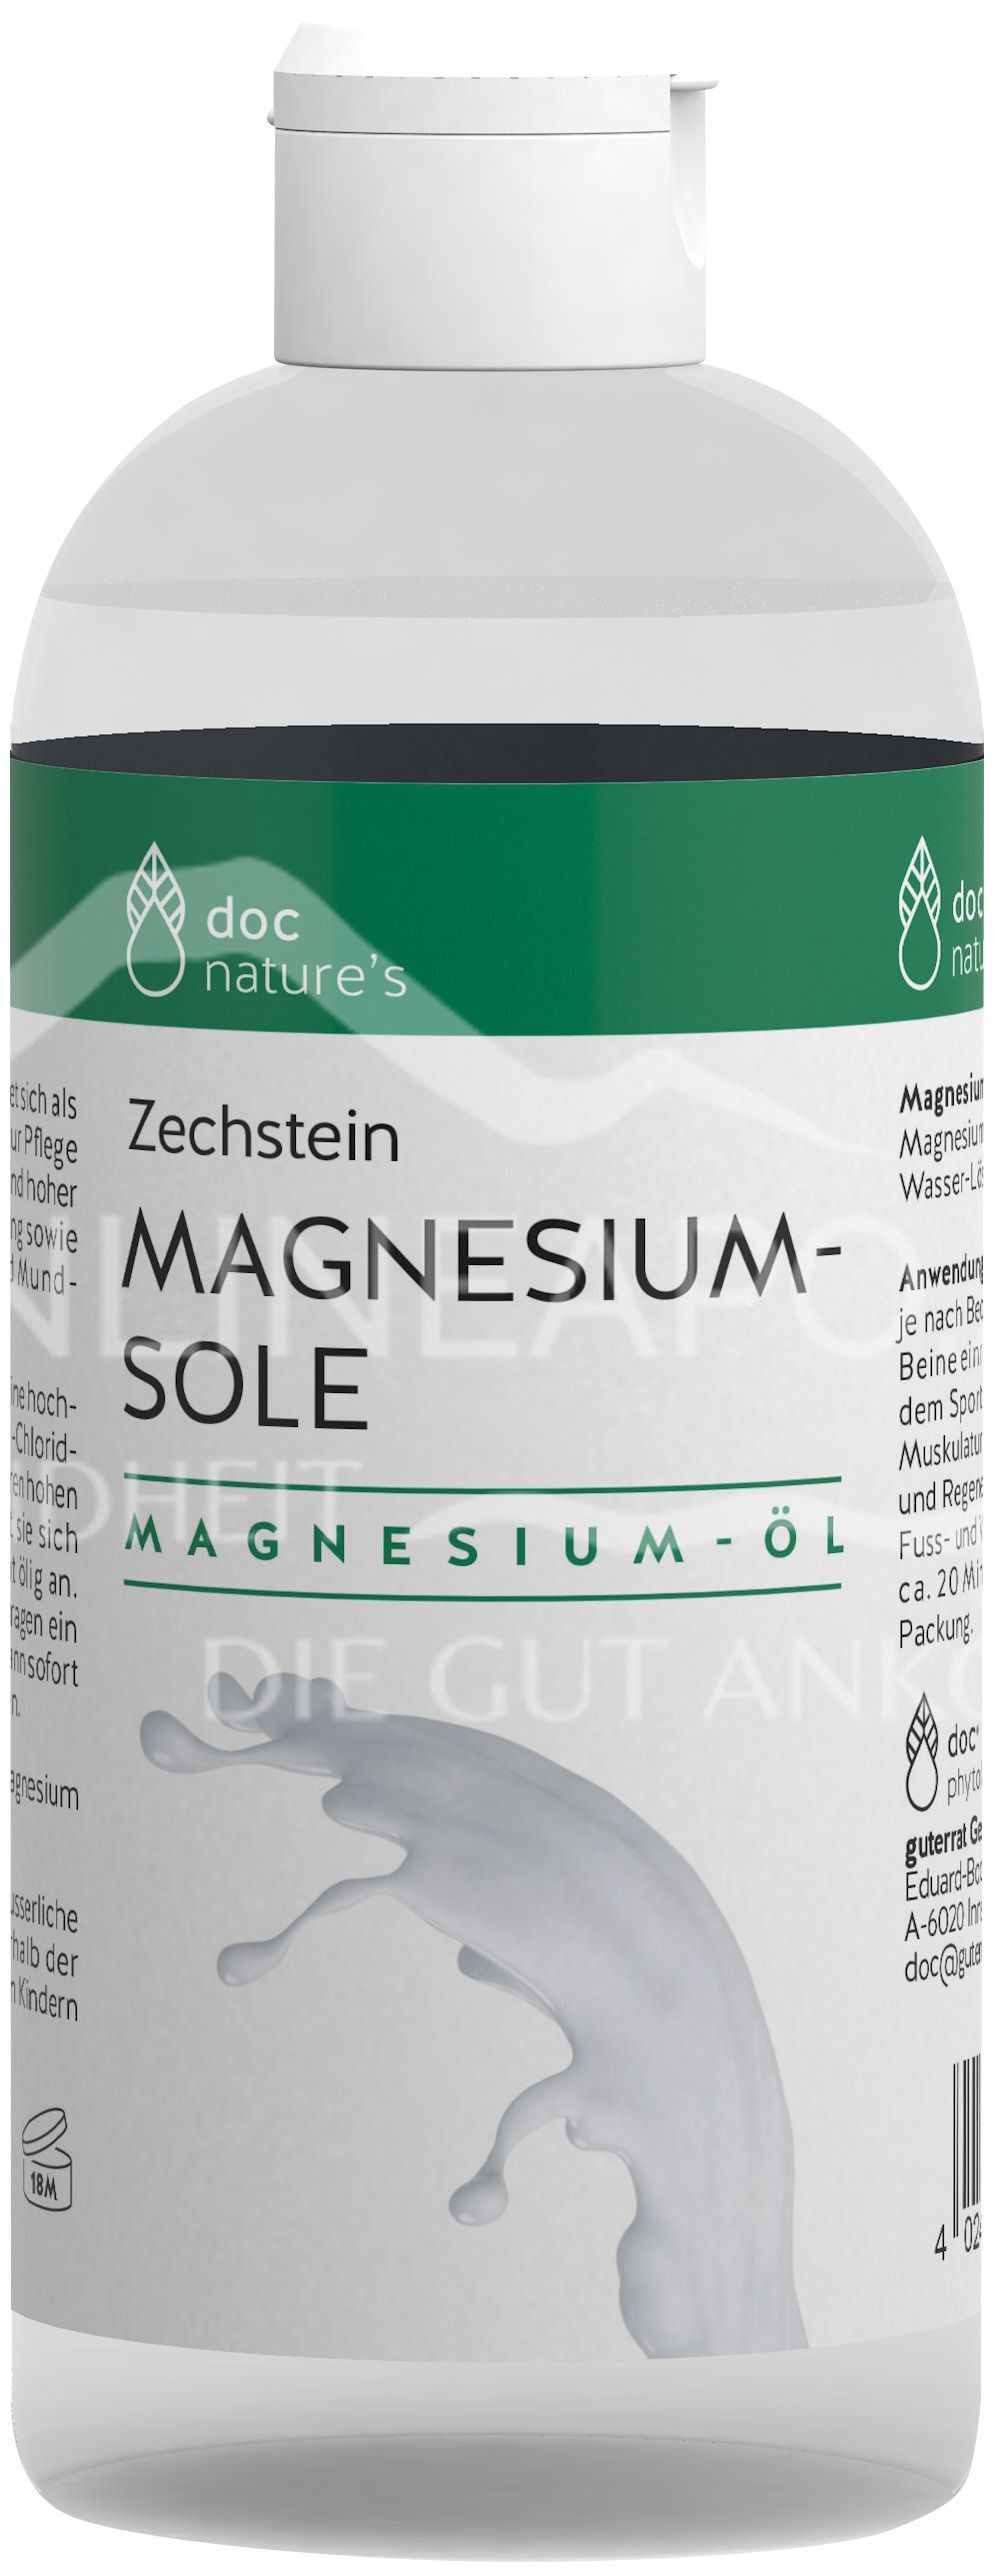 doc nature’s Zechstein MAGNESIUM-SOLE Magnesium-Öl